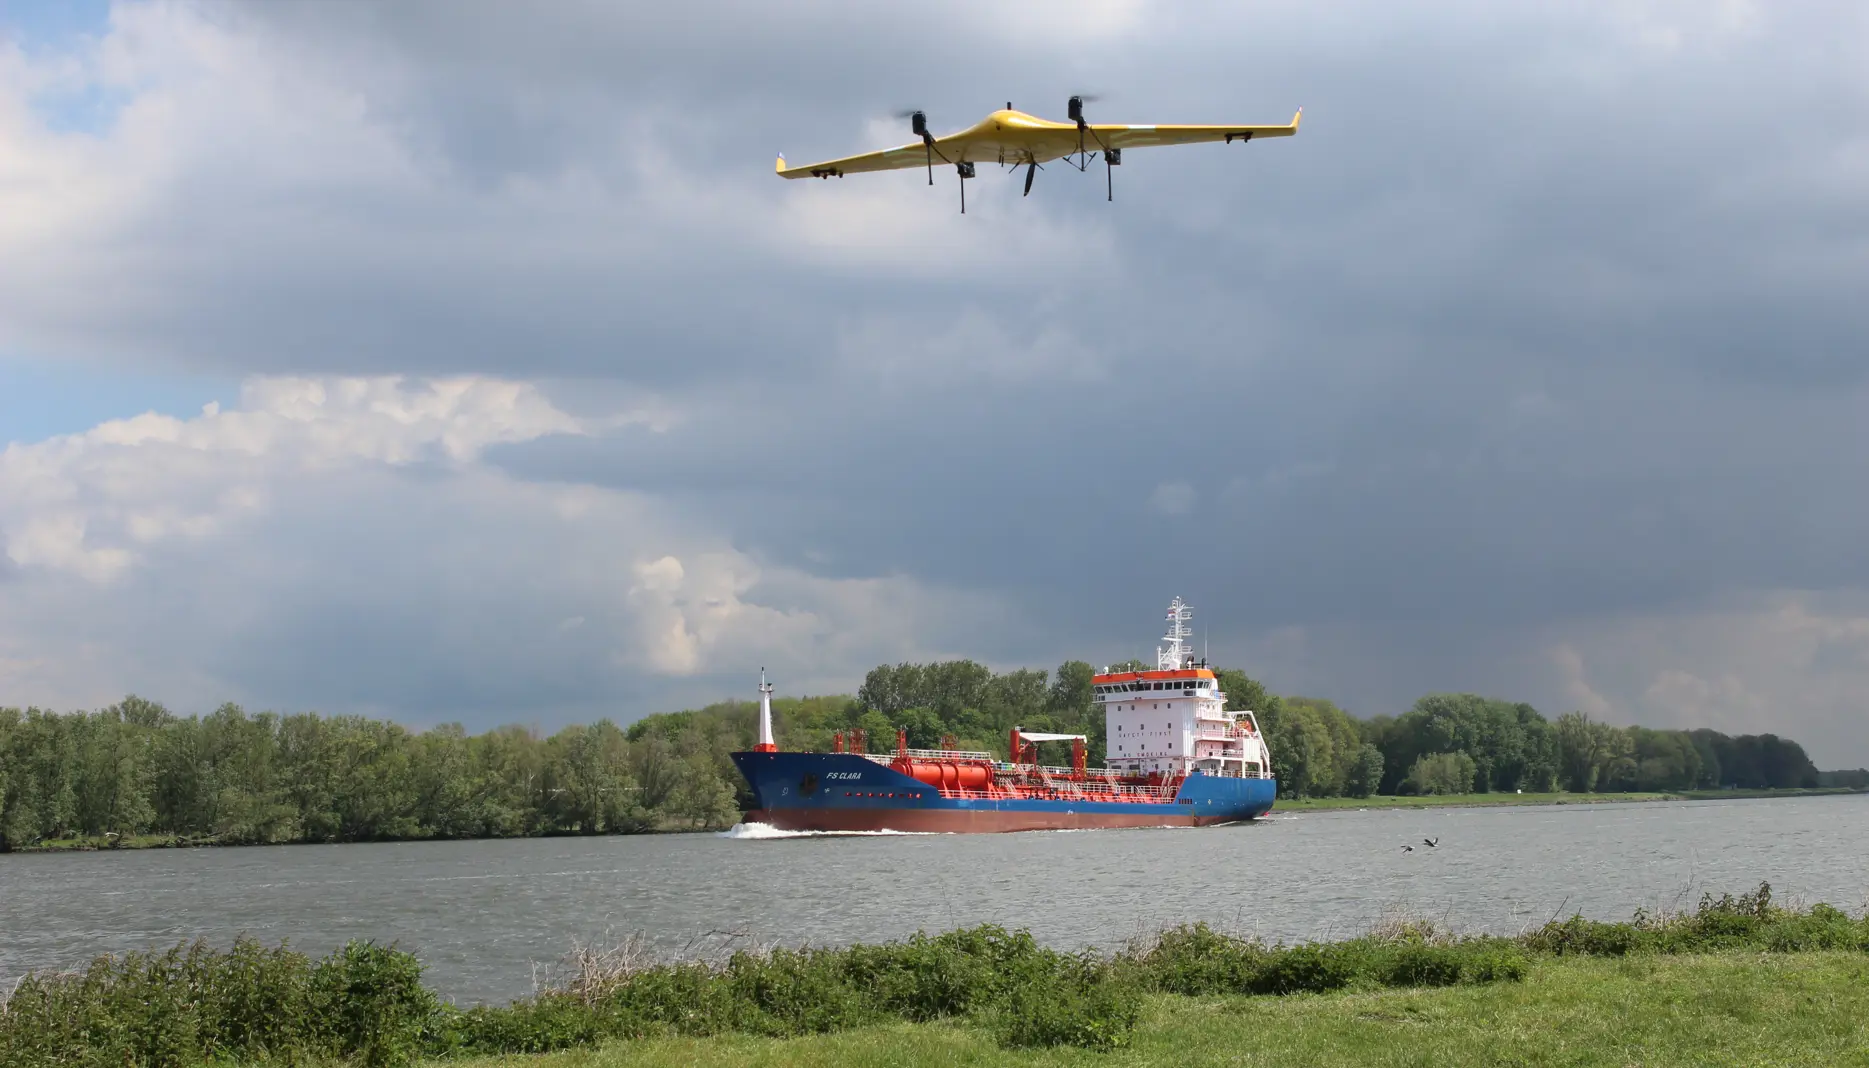 Test luchtverkeersleidingsinstructies aan dronebestuurder via GoDrone app succesvol